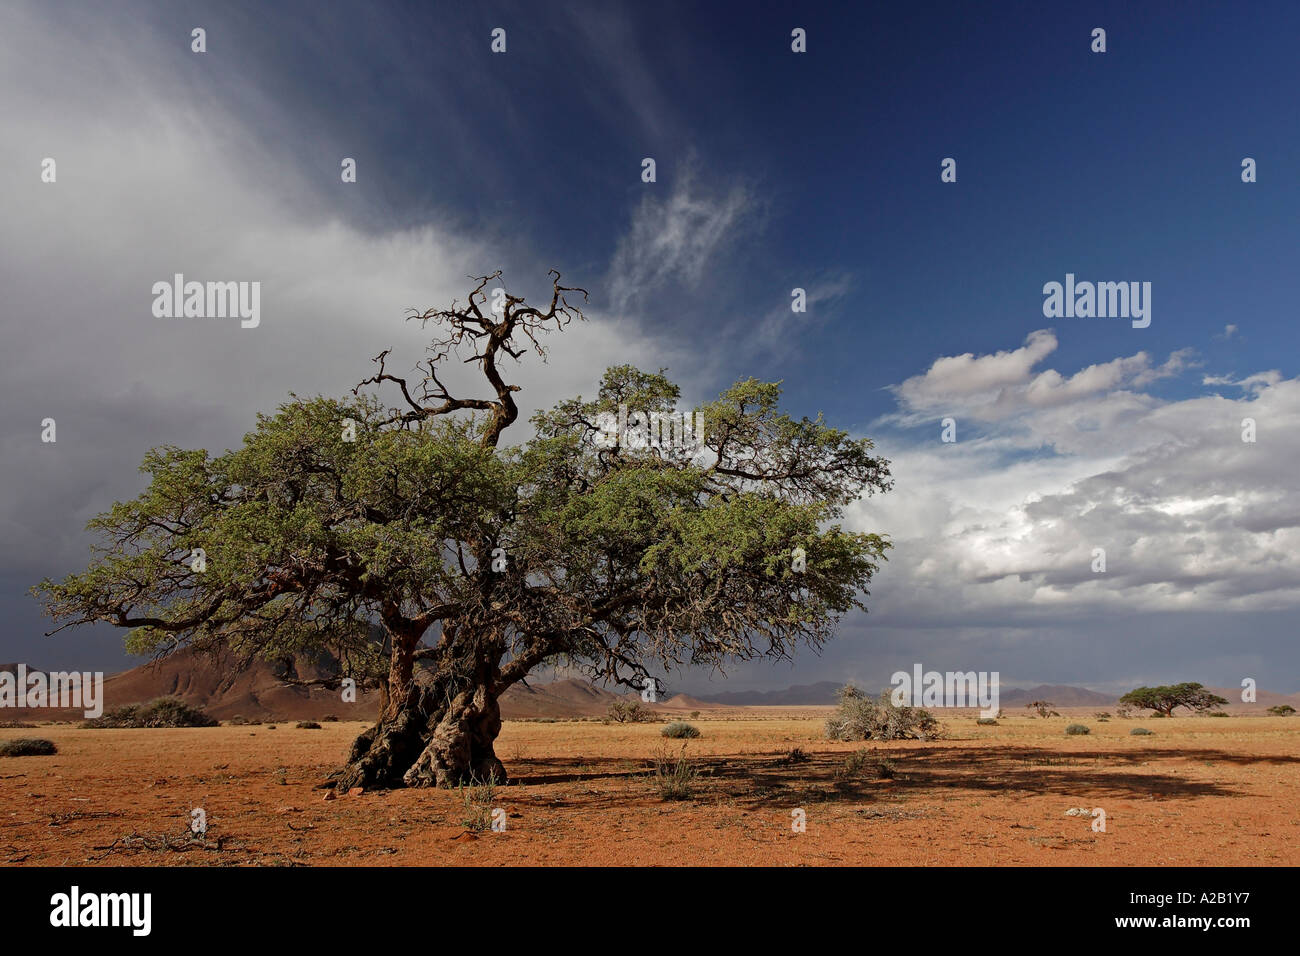 Upcoming thunderstorm with mountains and a tree. Tiras Mountains, Farm Koiimasis, Namibia Stock Photo